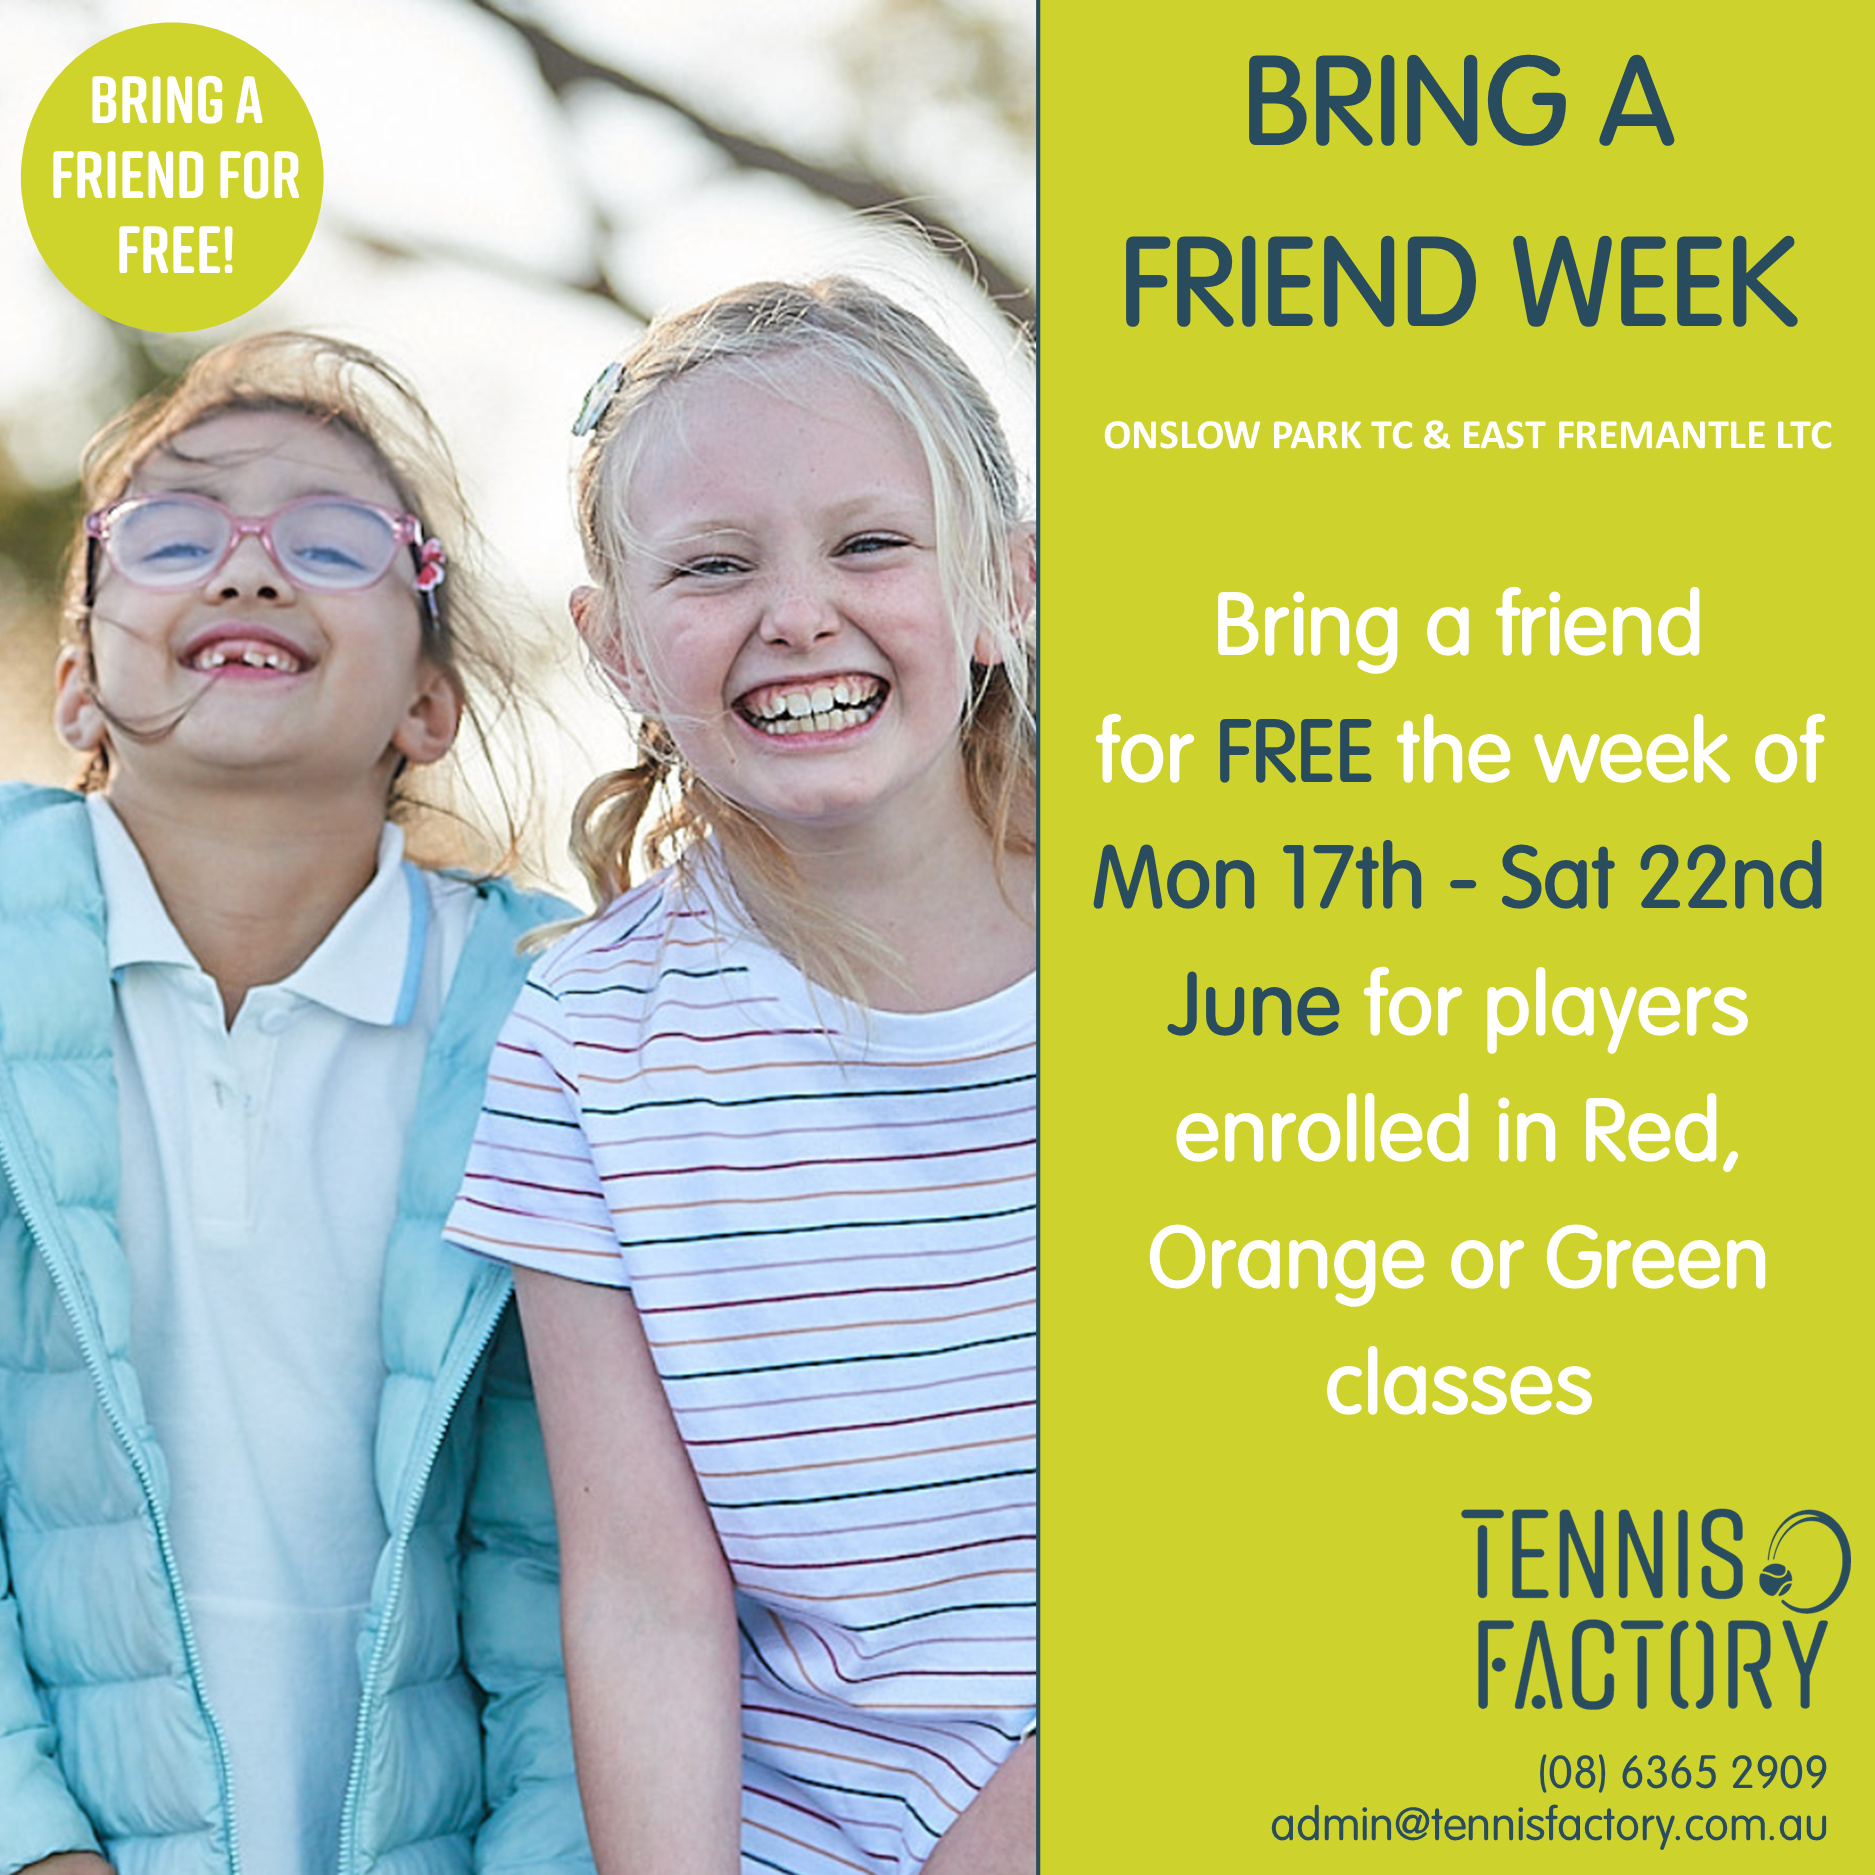 Bring a Friend Week!